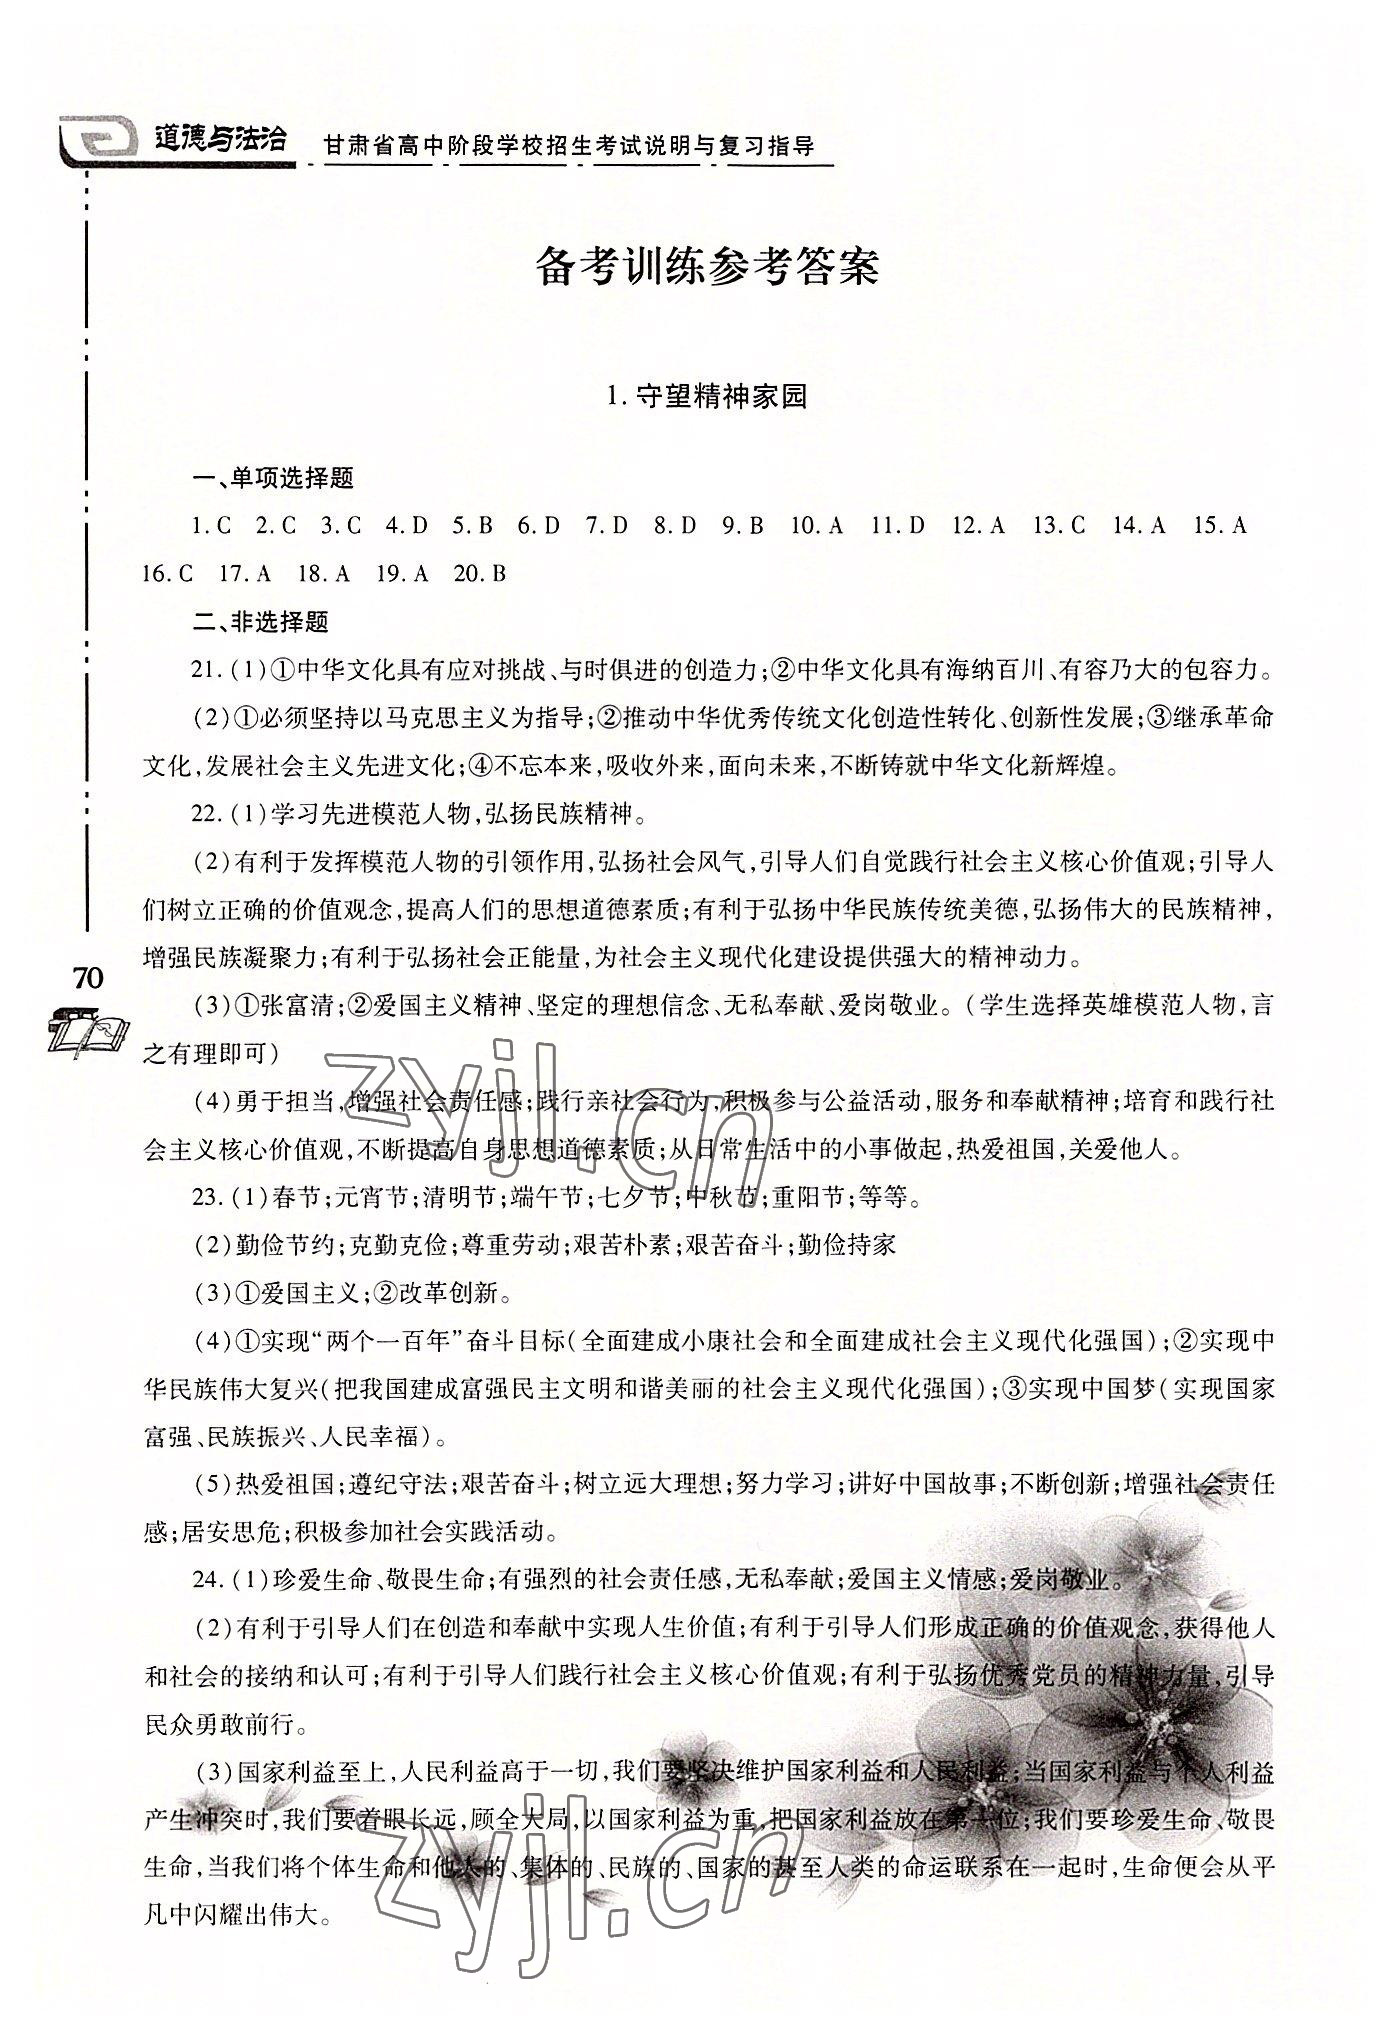 2022年甘肃省高中阶段学校招生考试说明与复习指导道德与法治 第1页